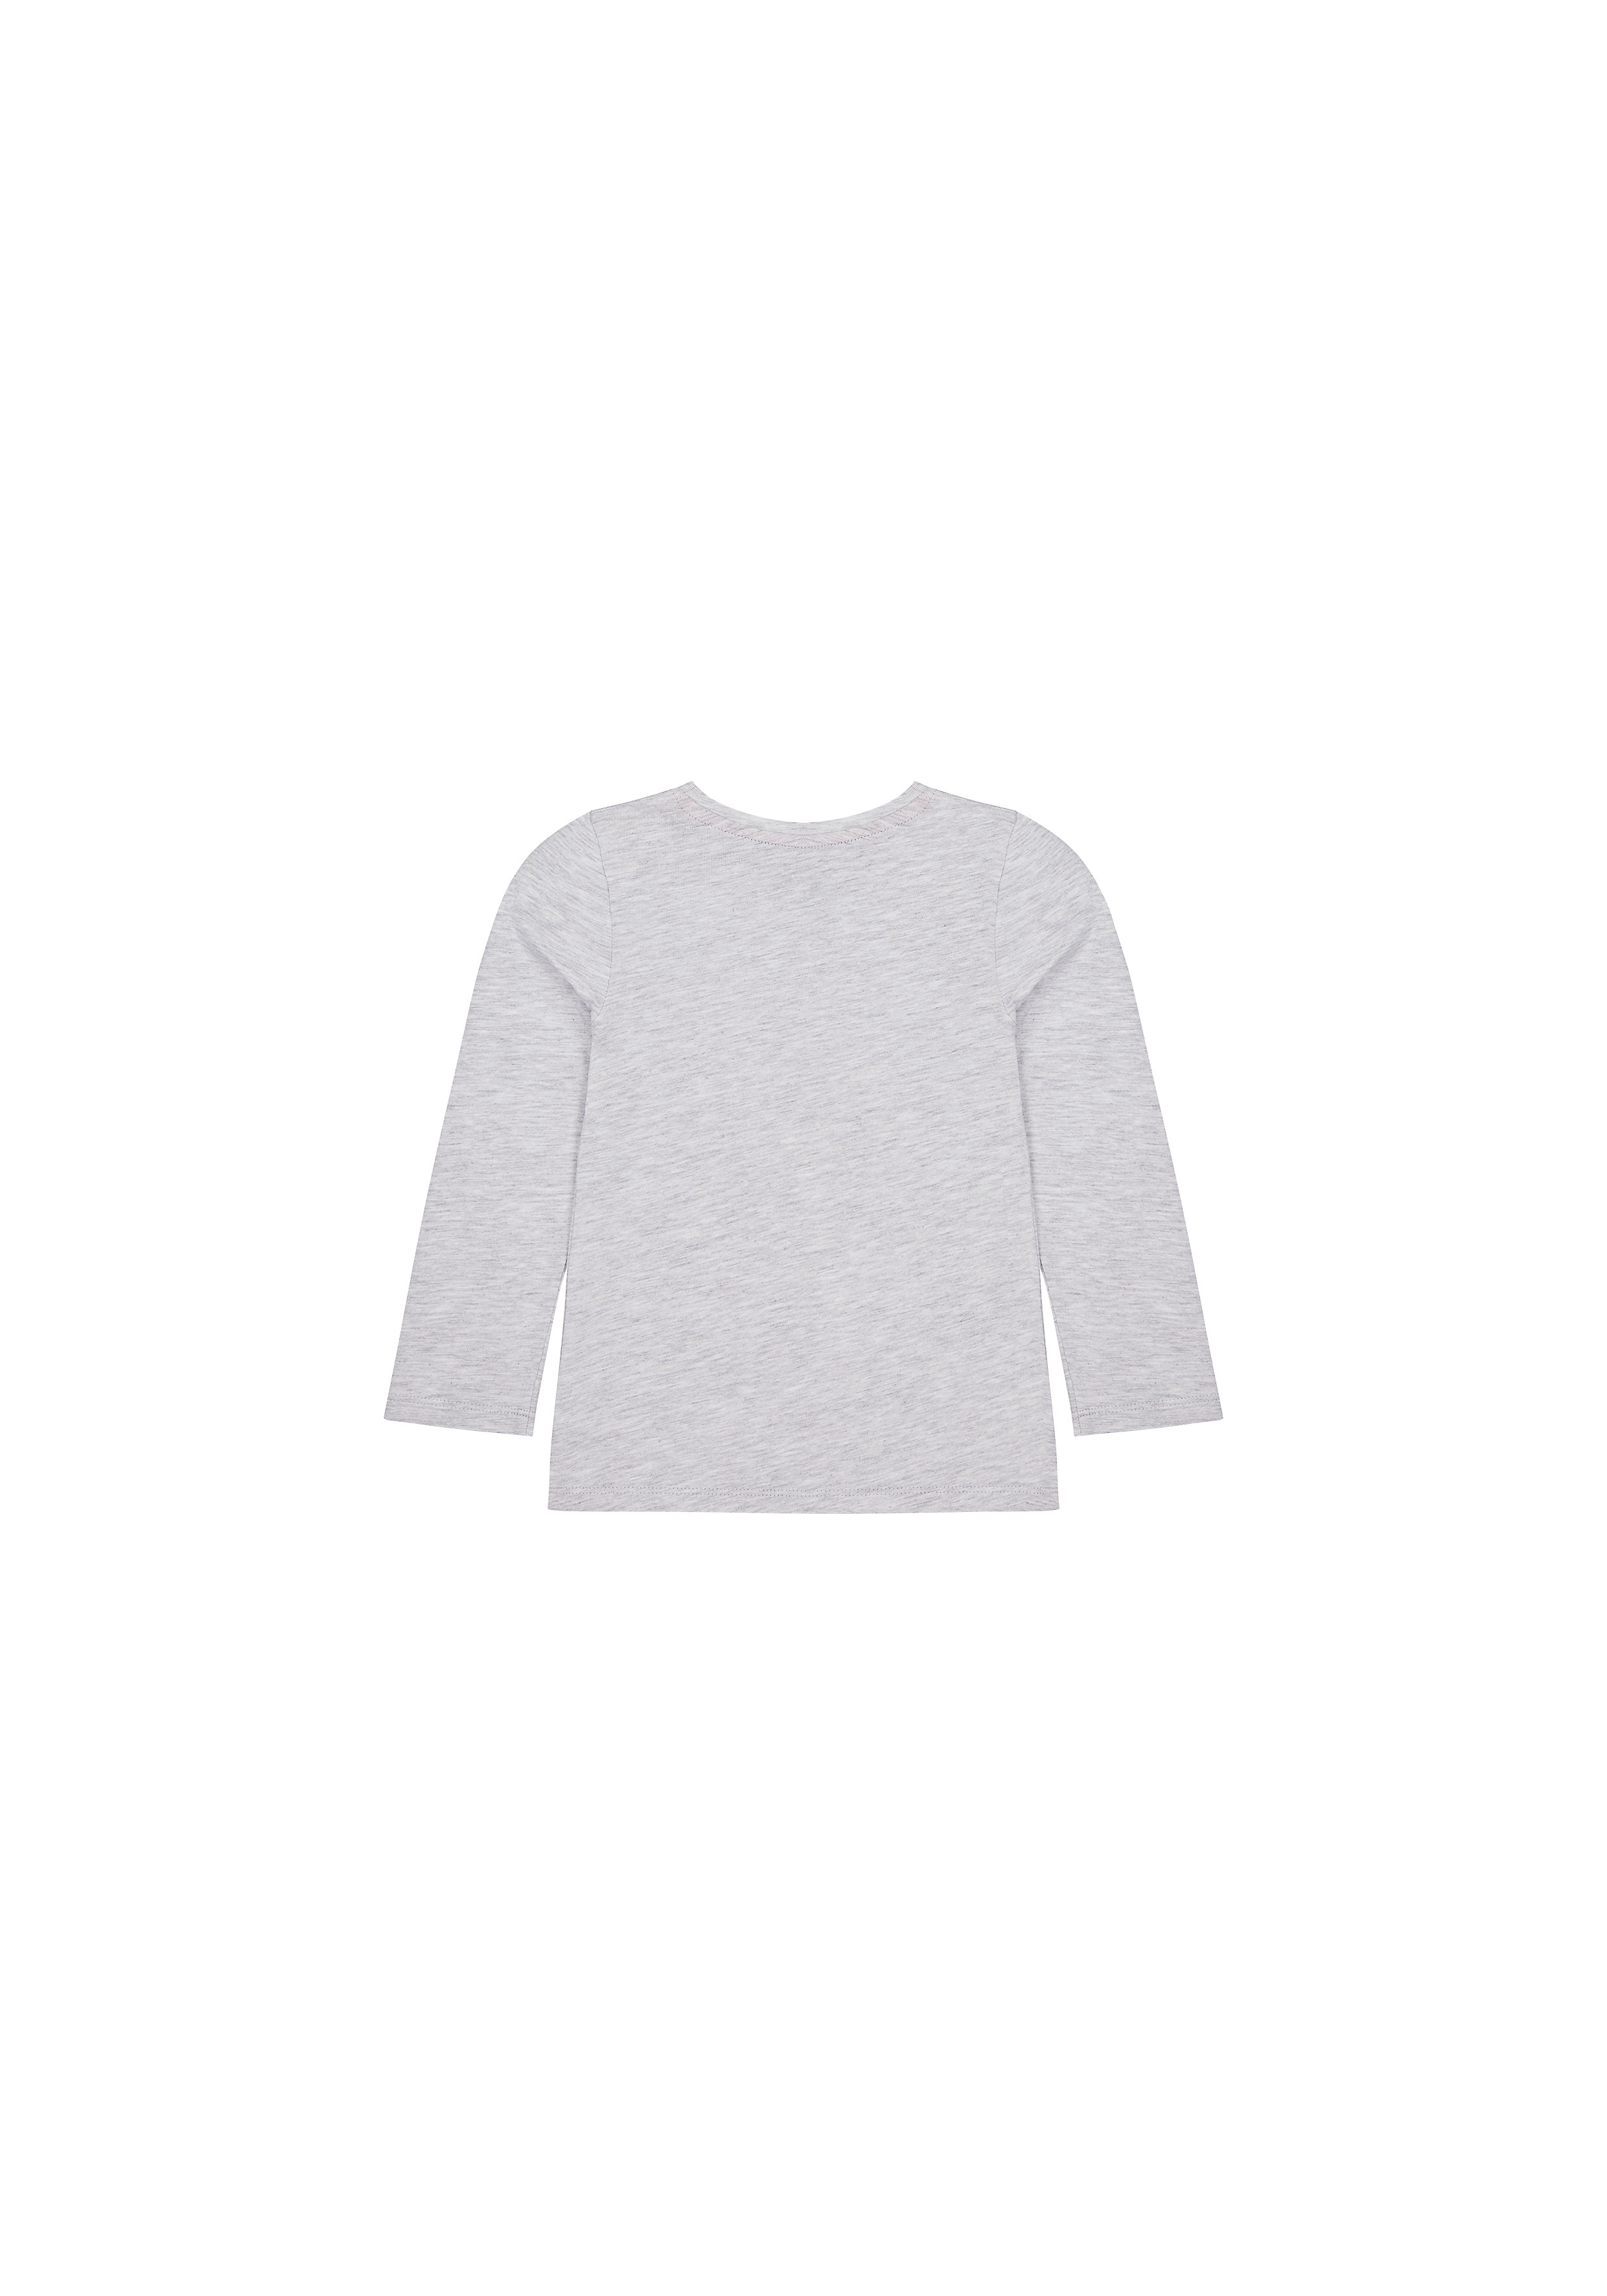 Girls Full Sleeves T-Shirt Girl Print - Grey